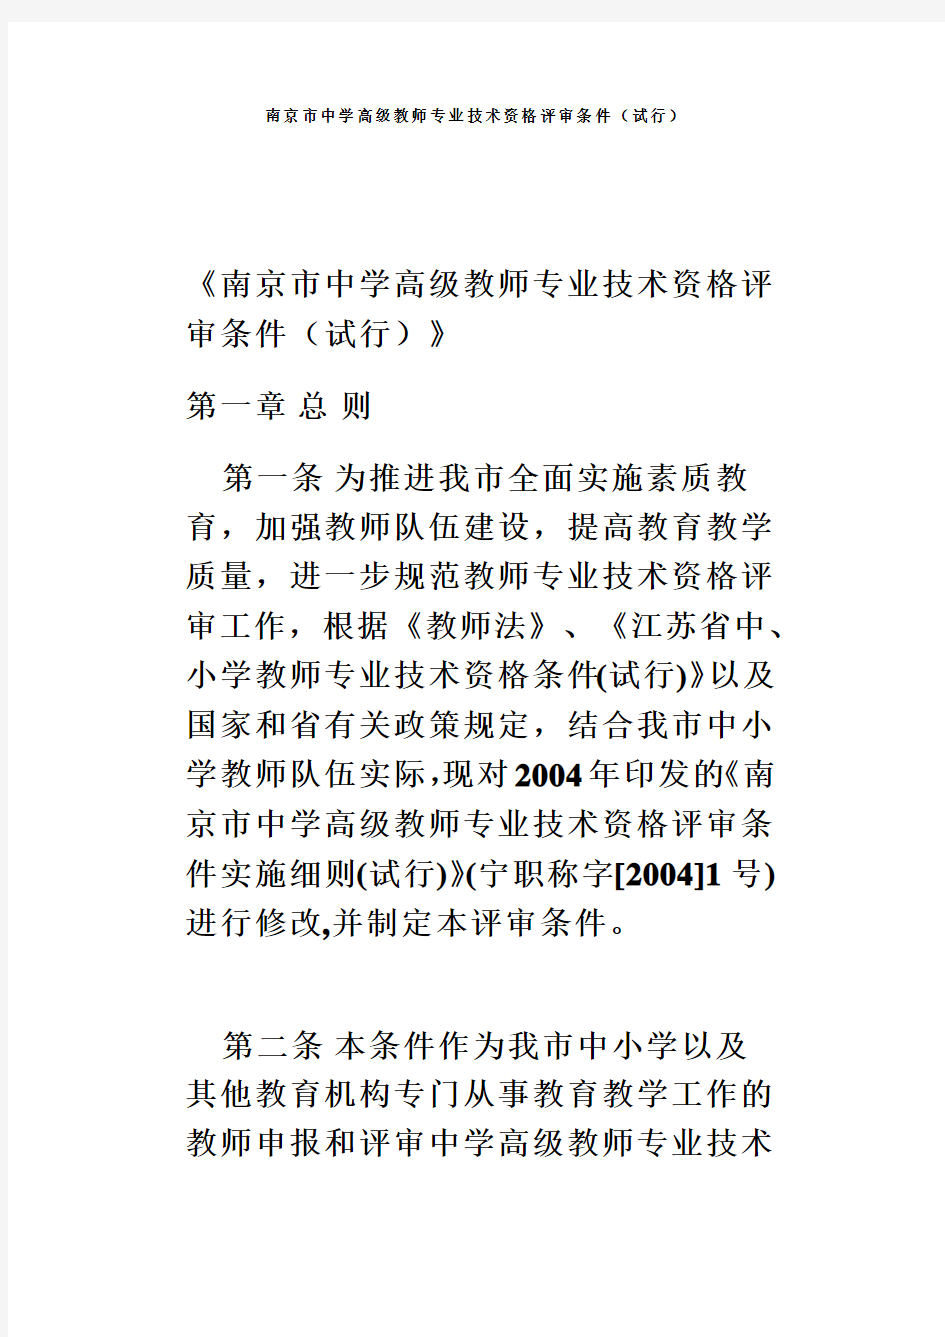 南京市中学高级教师专业技术资格评审条件(试行)(同名1672)